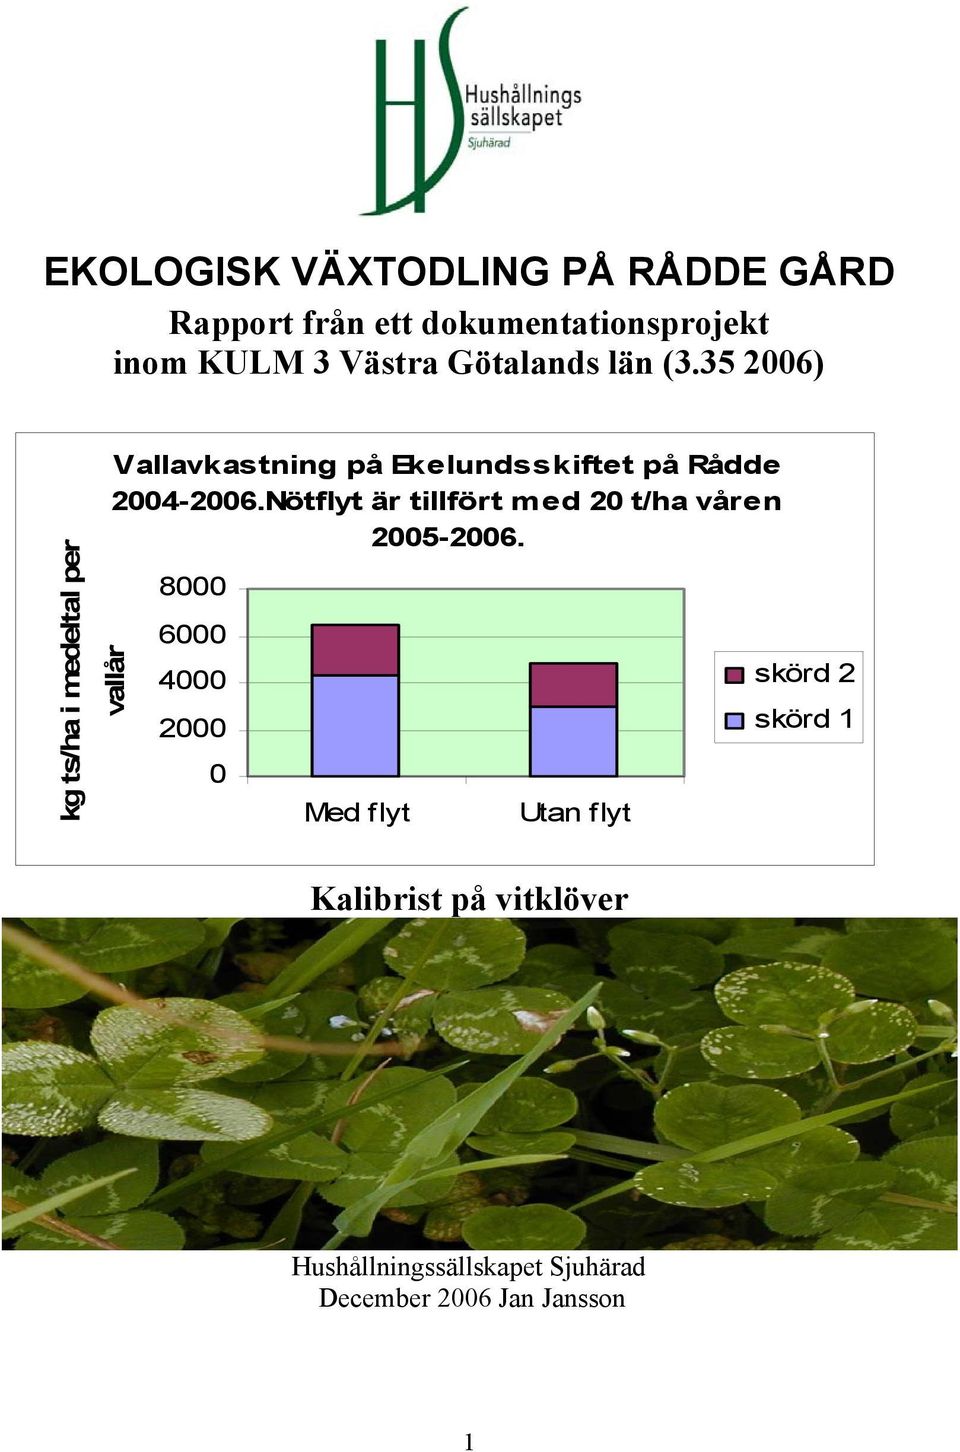 35 2006) kg ts/ha i medeltal per vallår Vallavkastning på Ekelundsskiftet på Rådde 2004-2006.